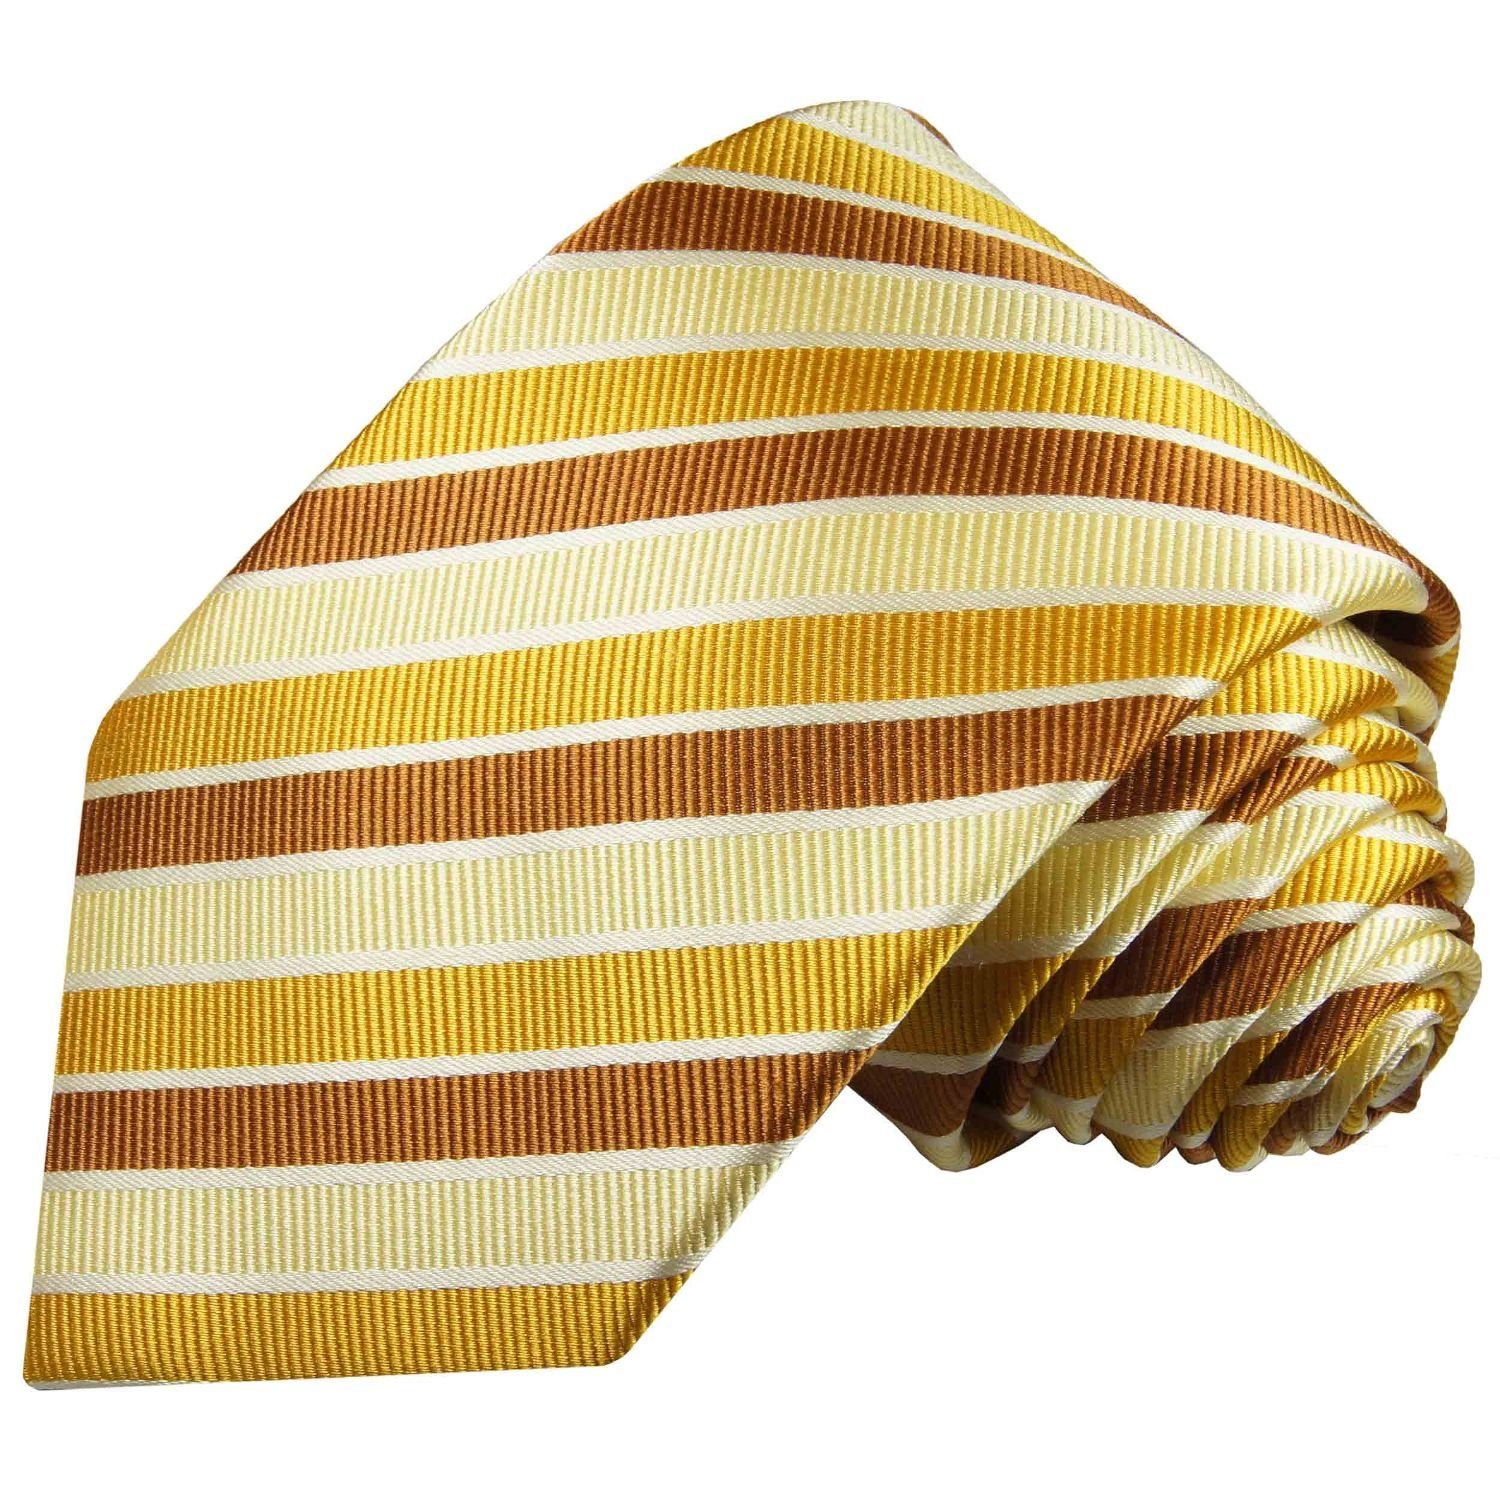 Paul Malone Krawatte Moderne Herren Seidenkrawatte gestreift 100% Seide Breit (8cm), gelb gold braun 272